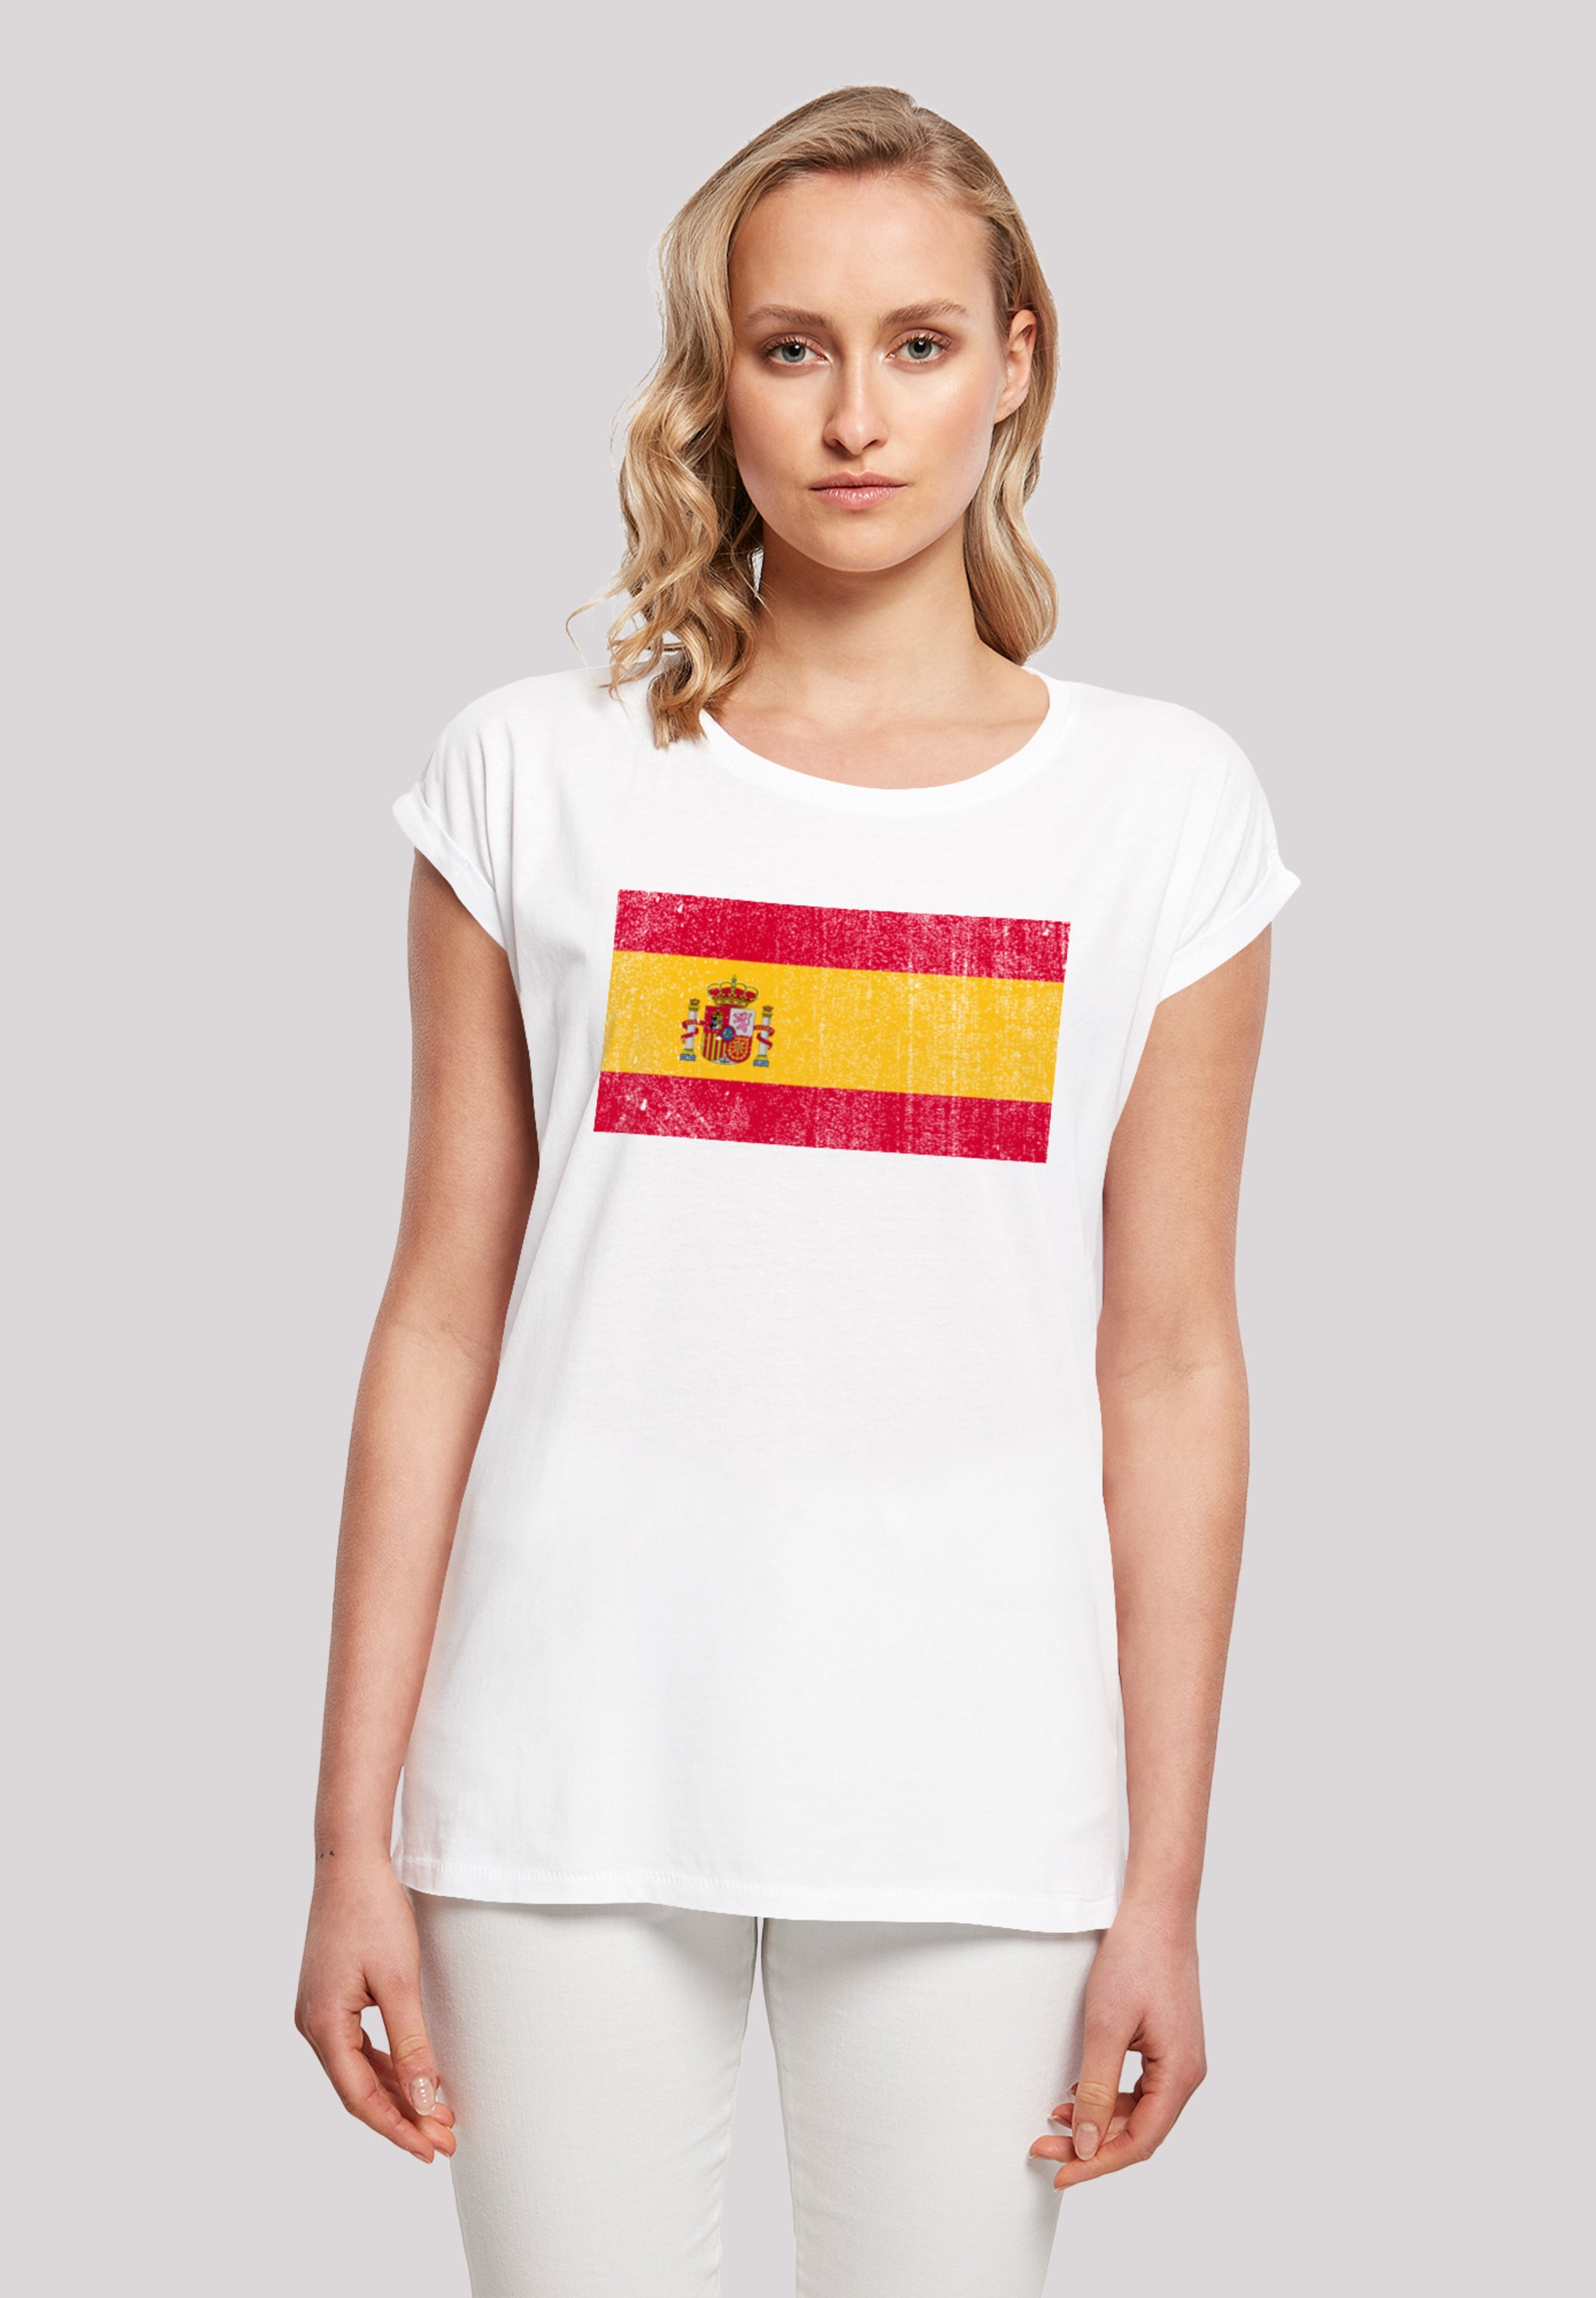 Neue Ware eingetroffen! F4NT4STIC T-Shirt »Spain Spanien bestellen Flagge distressed«, Print